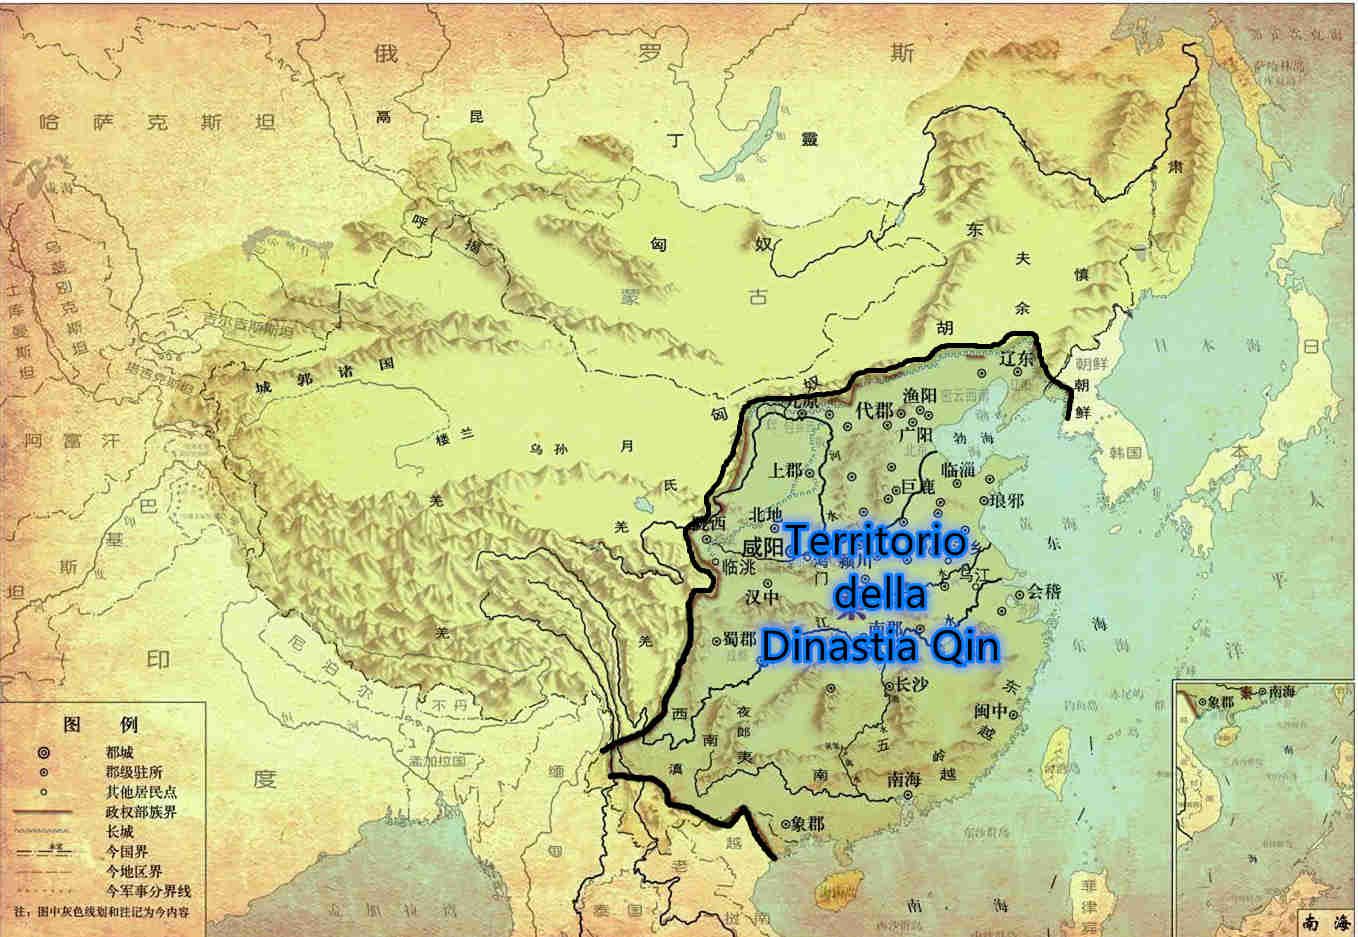 Mappa del territorio della dinastia Qin